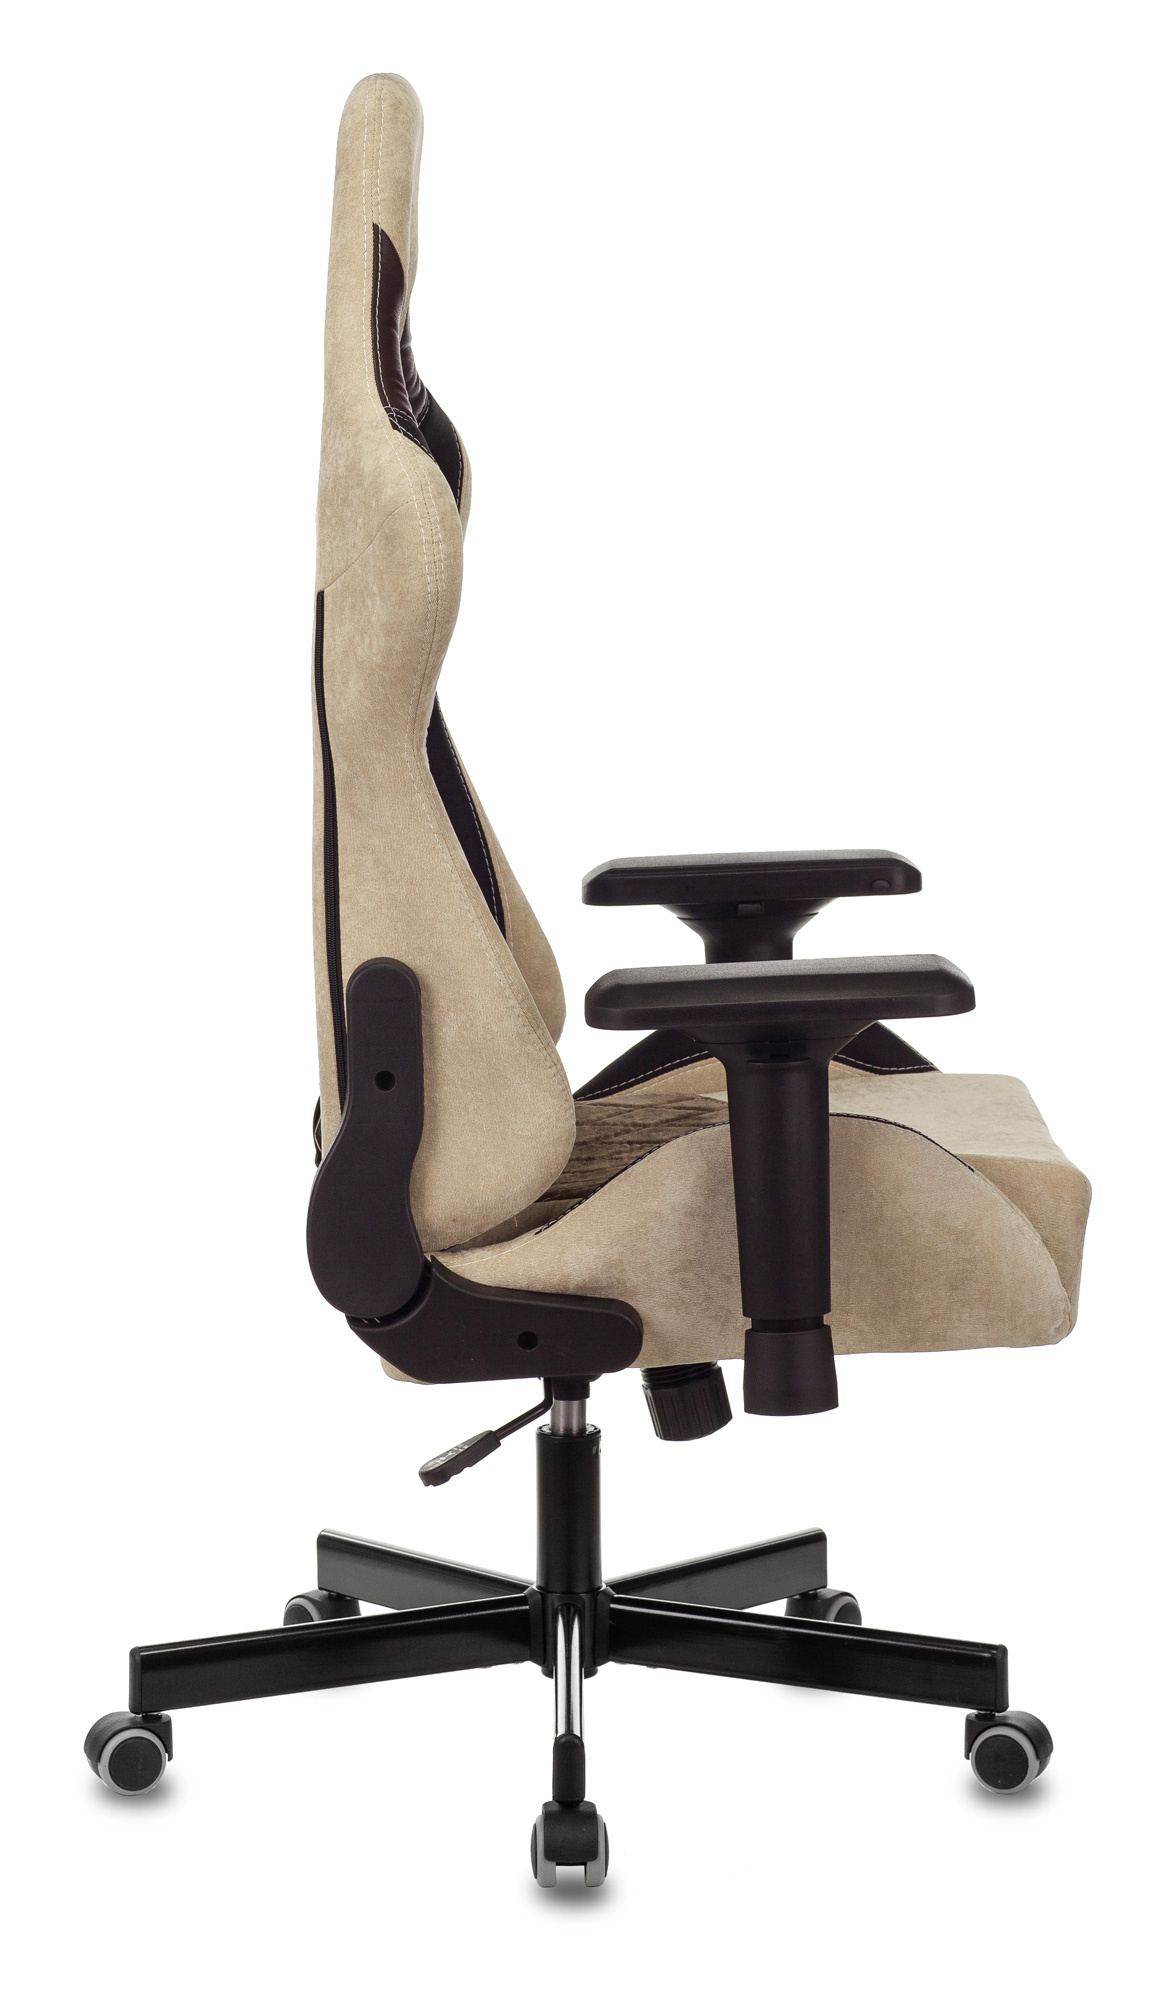 Кресло игровое Zombie VIKING 7 KNIGHT Fabric коричневый/бежевый текстиль/эко.кожа с подголов. крестов. металл